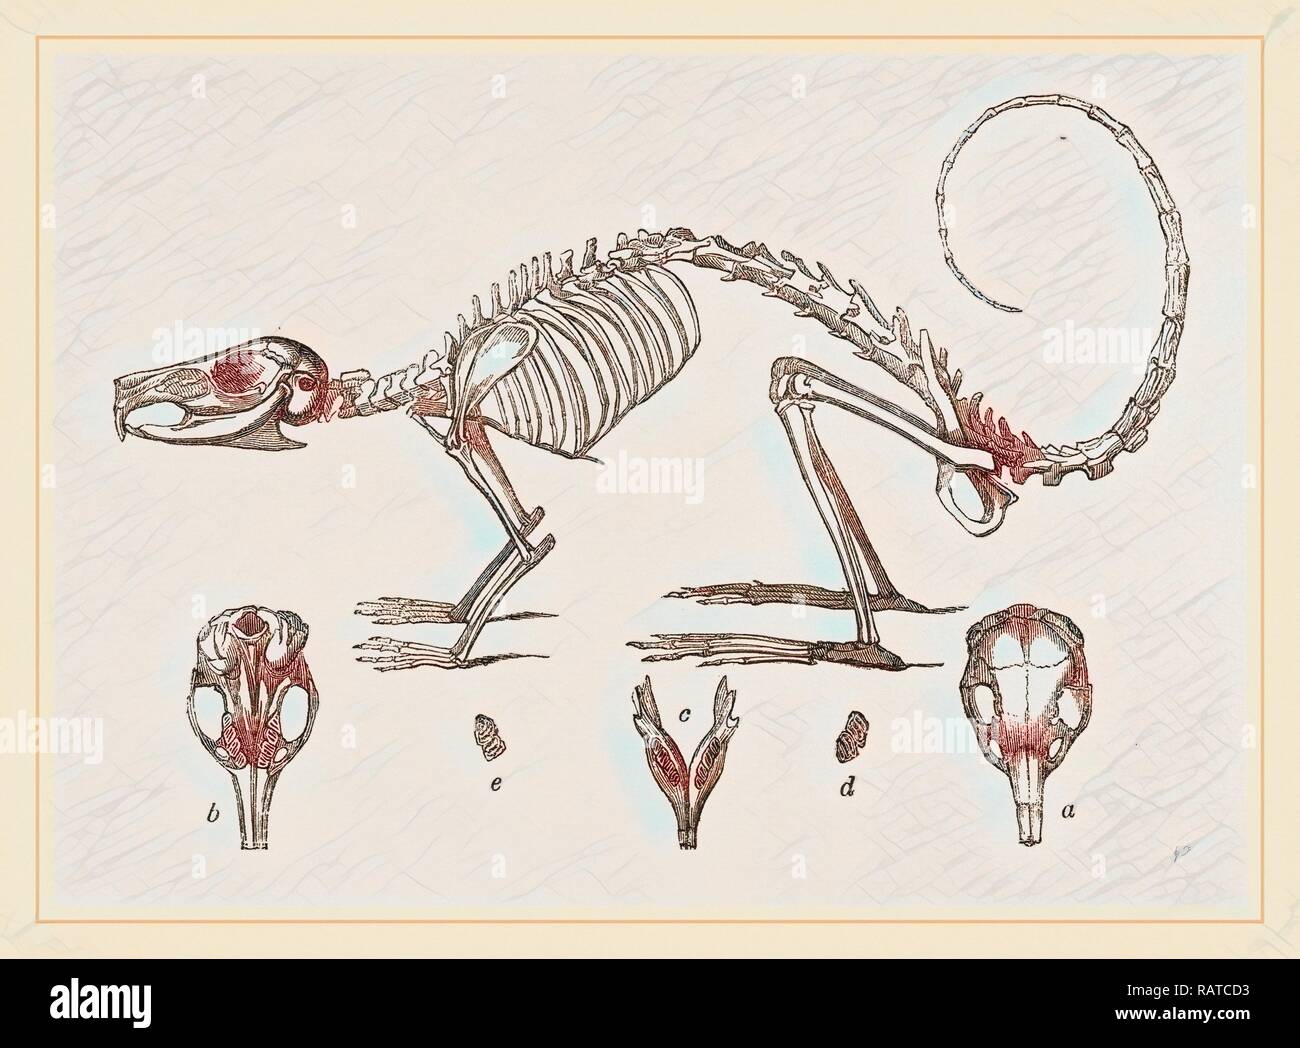 El esqueleto y el cráneo de Cavier's Lagotis. Reimagined by Gibon. Arte clásico con un toque moderno reinventado Foto de stock